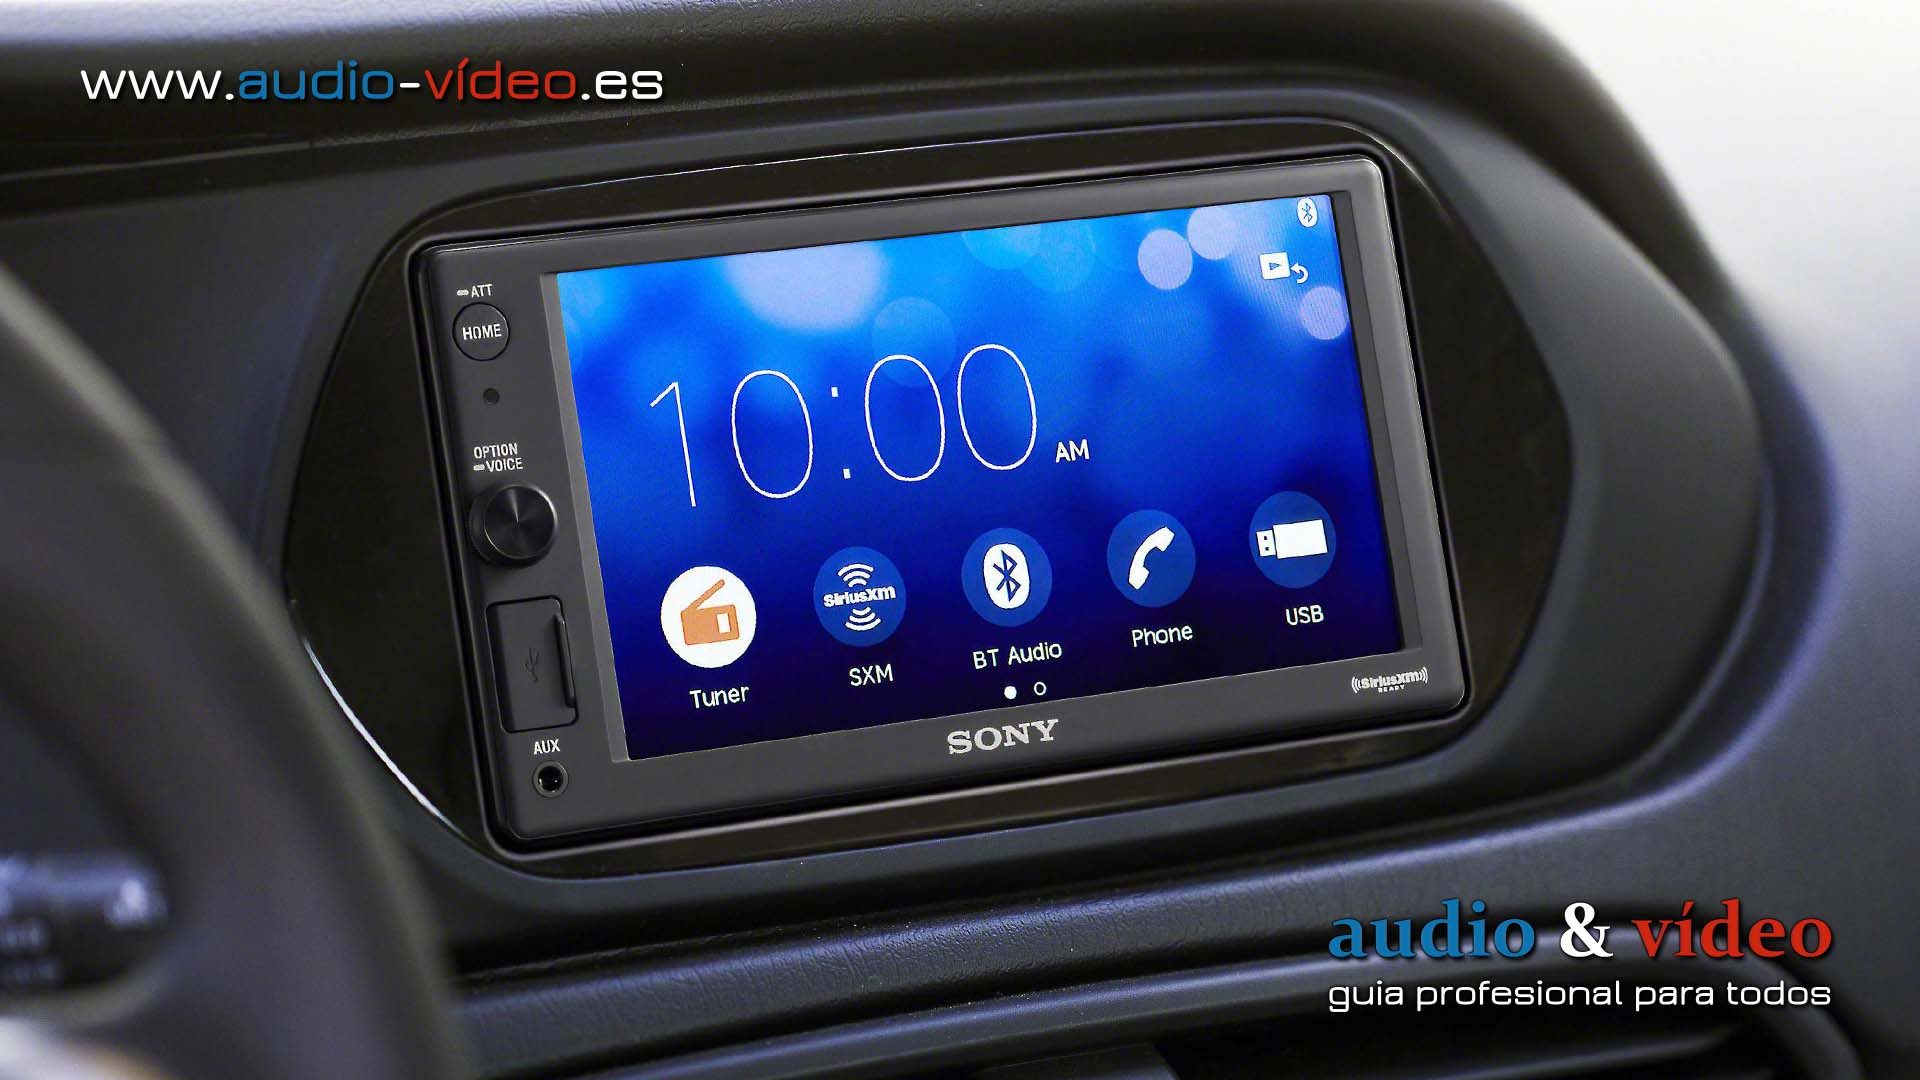 Sony XAV-AX1000 receptor multimedia digital sin reproductor CDs para coche.